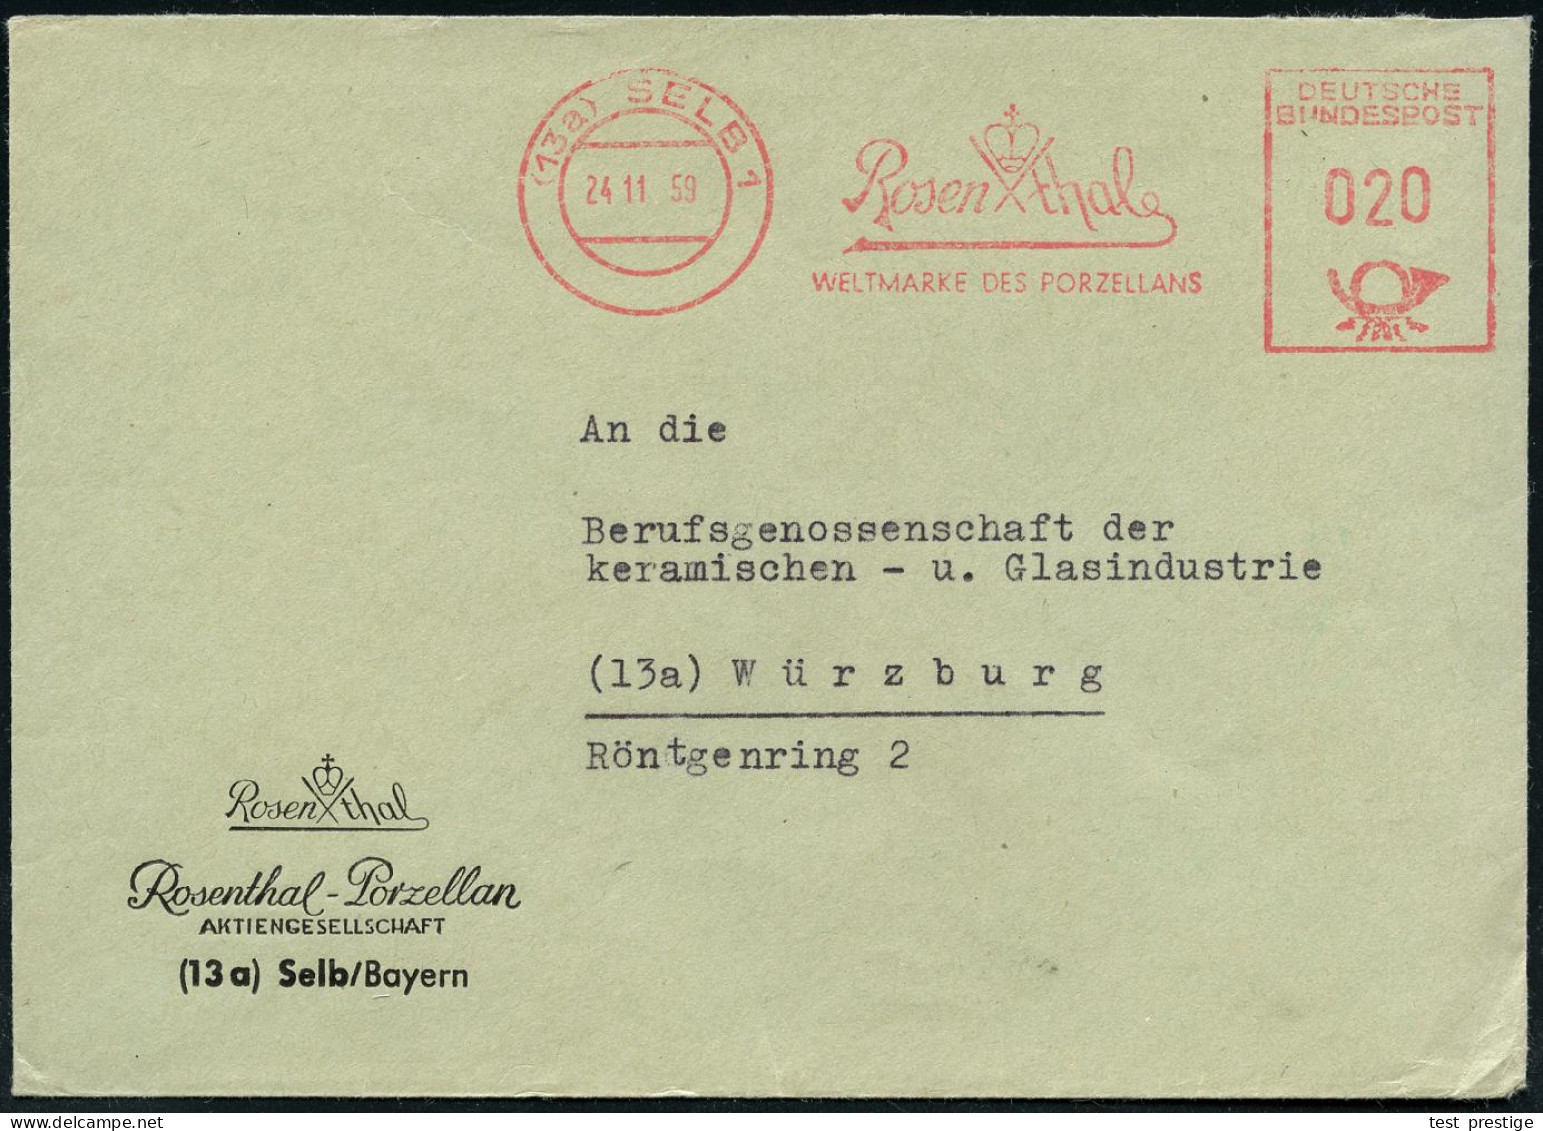 (13a) SELB 1/ Rosenthal/ WELTMARKE DES PORZELLANS 1959 (24.11.) AFS (Firmen-Logo) Motivgl. Firmen-Bf. (Dü.E-23CO) - KERA - Porselein